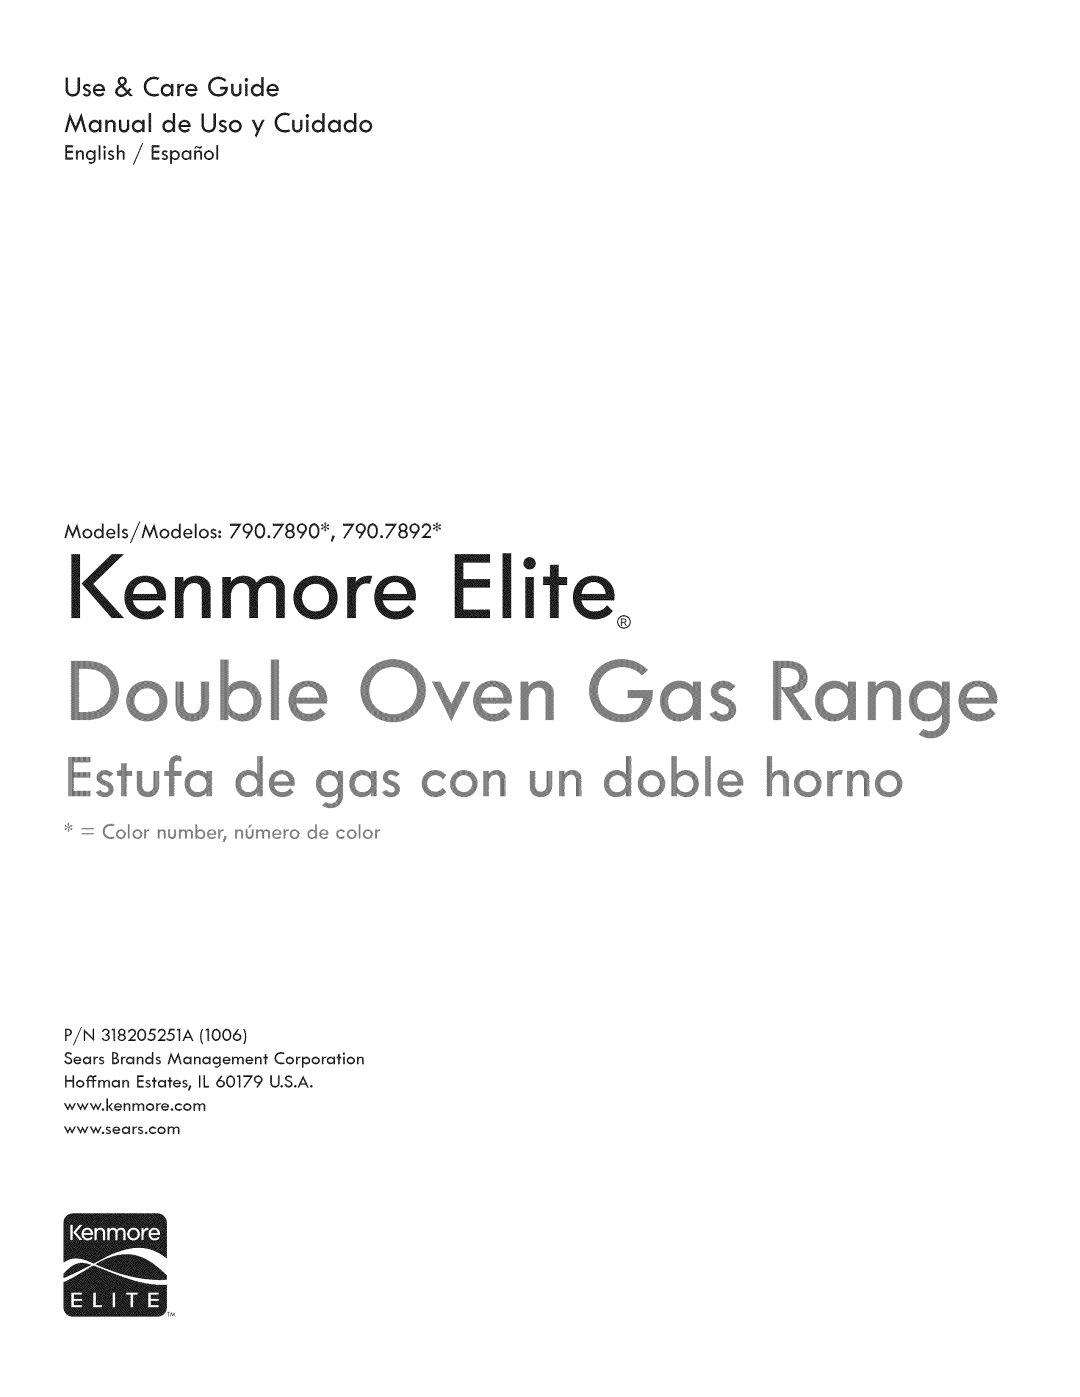 Kenmore 790.7890, 790.7892 manual COn Un, l e more, oange, korno, Use & Care Guide 